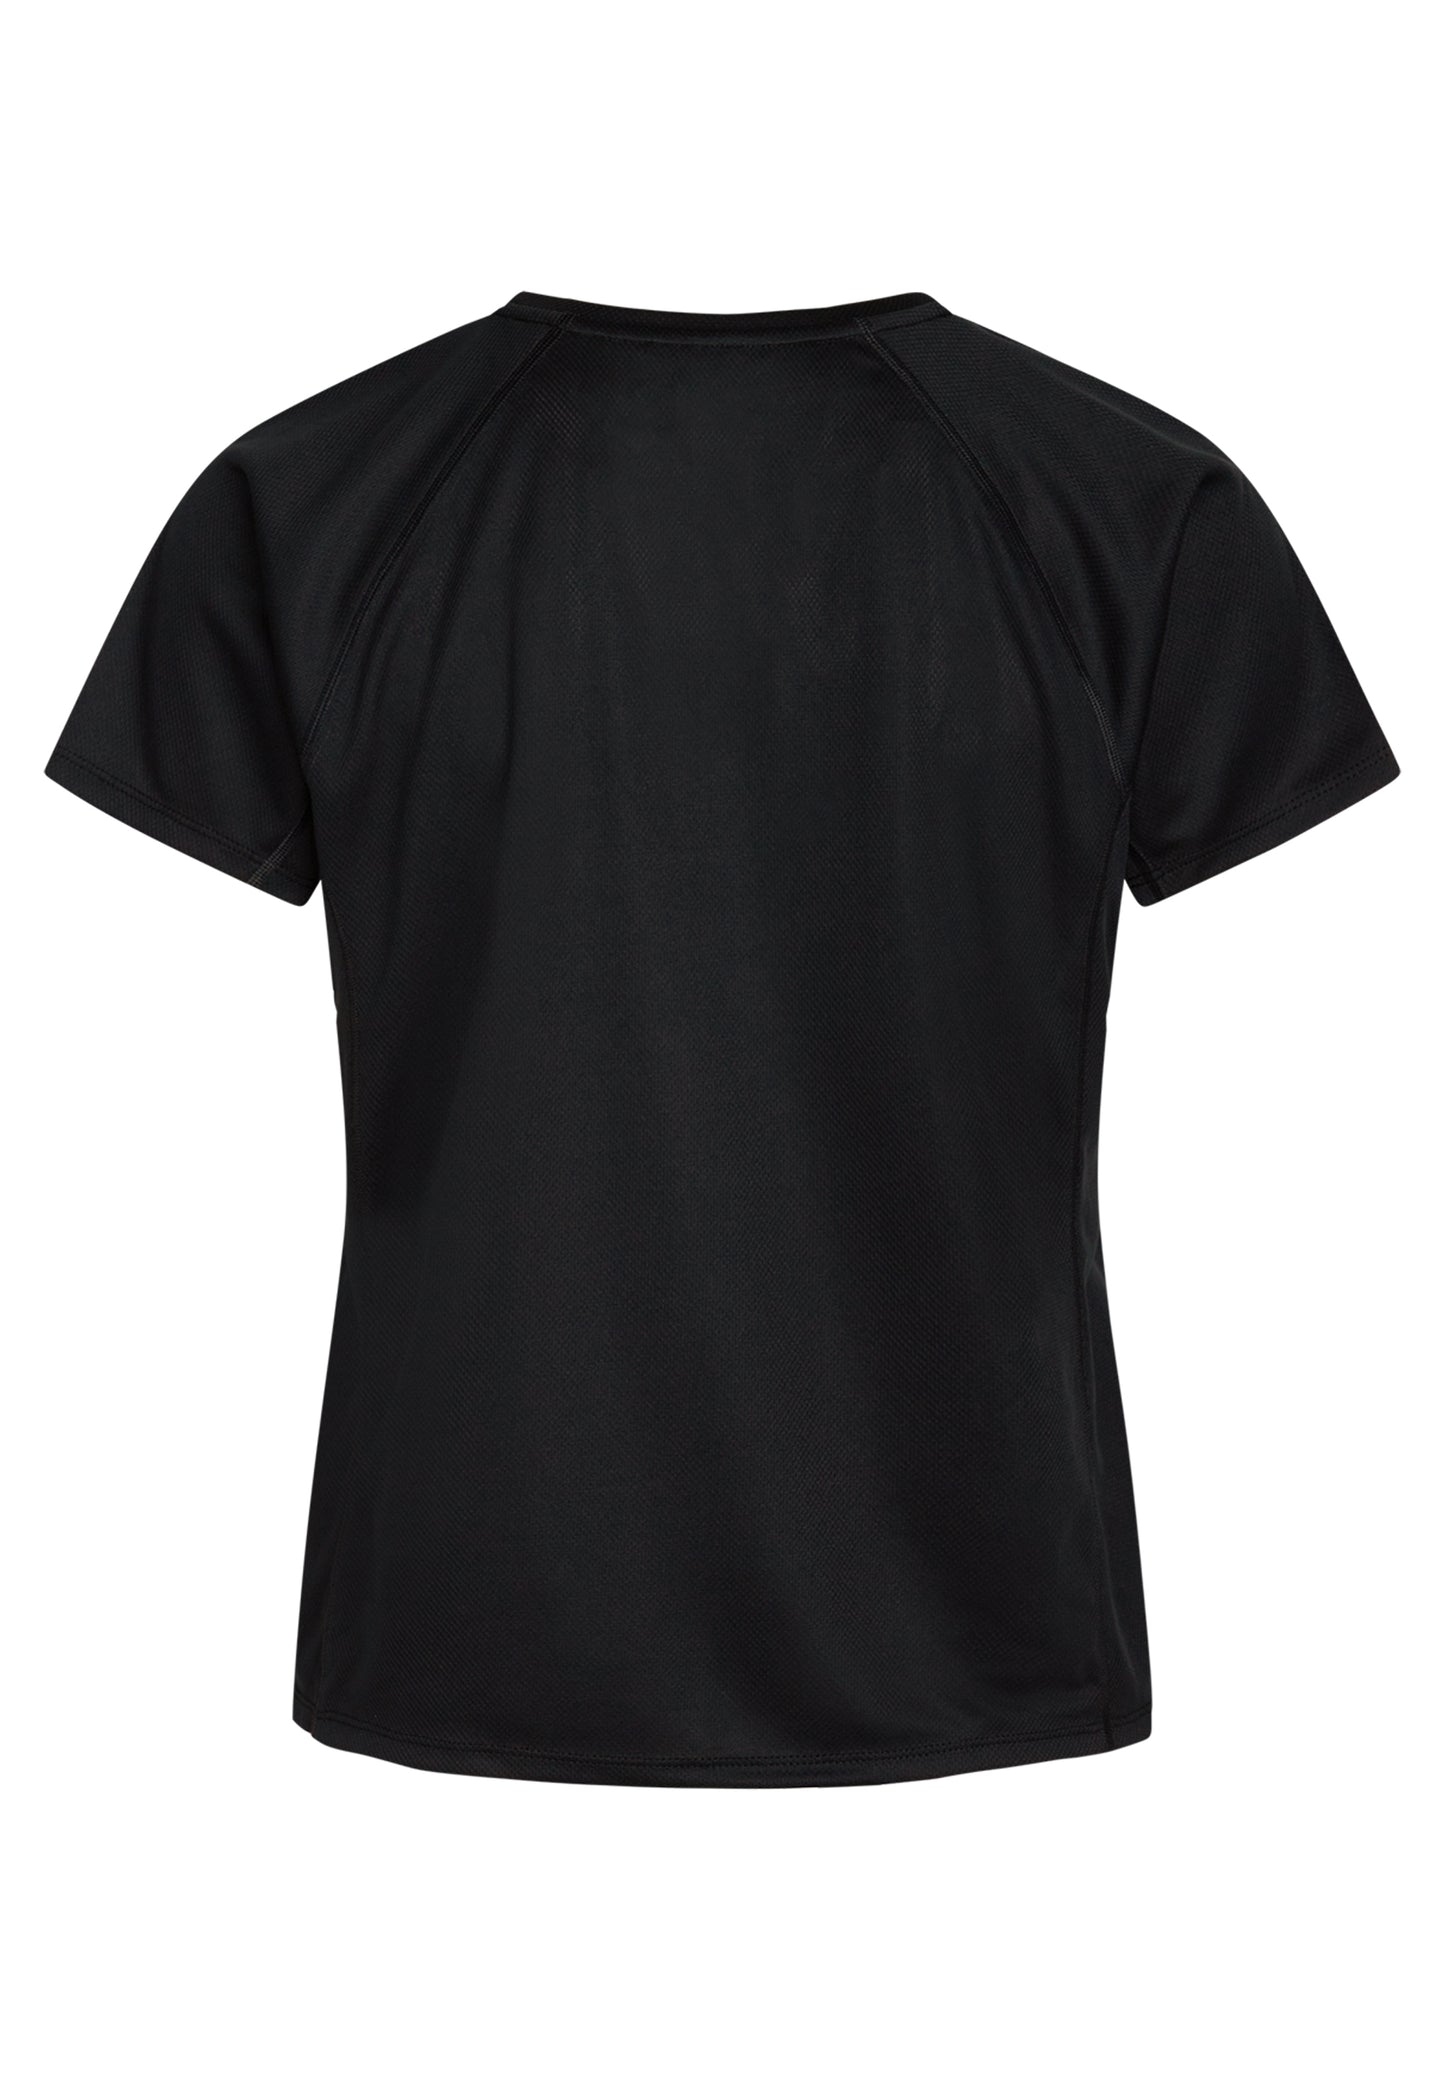 Zebdia Sports t-shirt med bryst print til kvinder sort